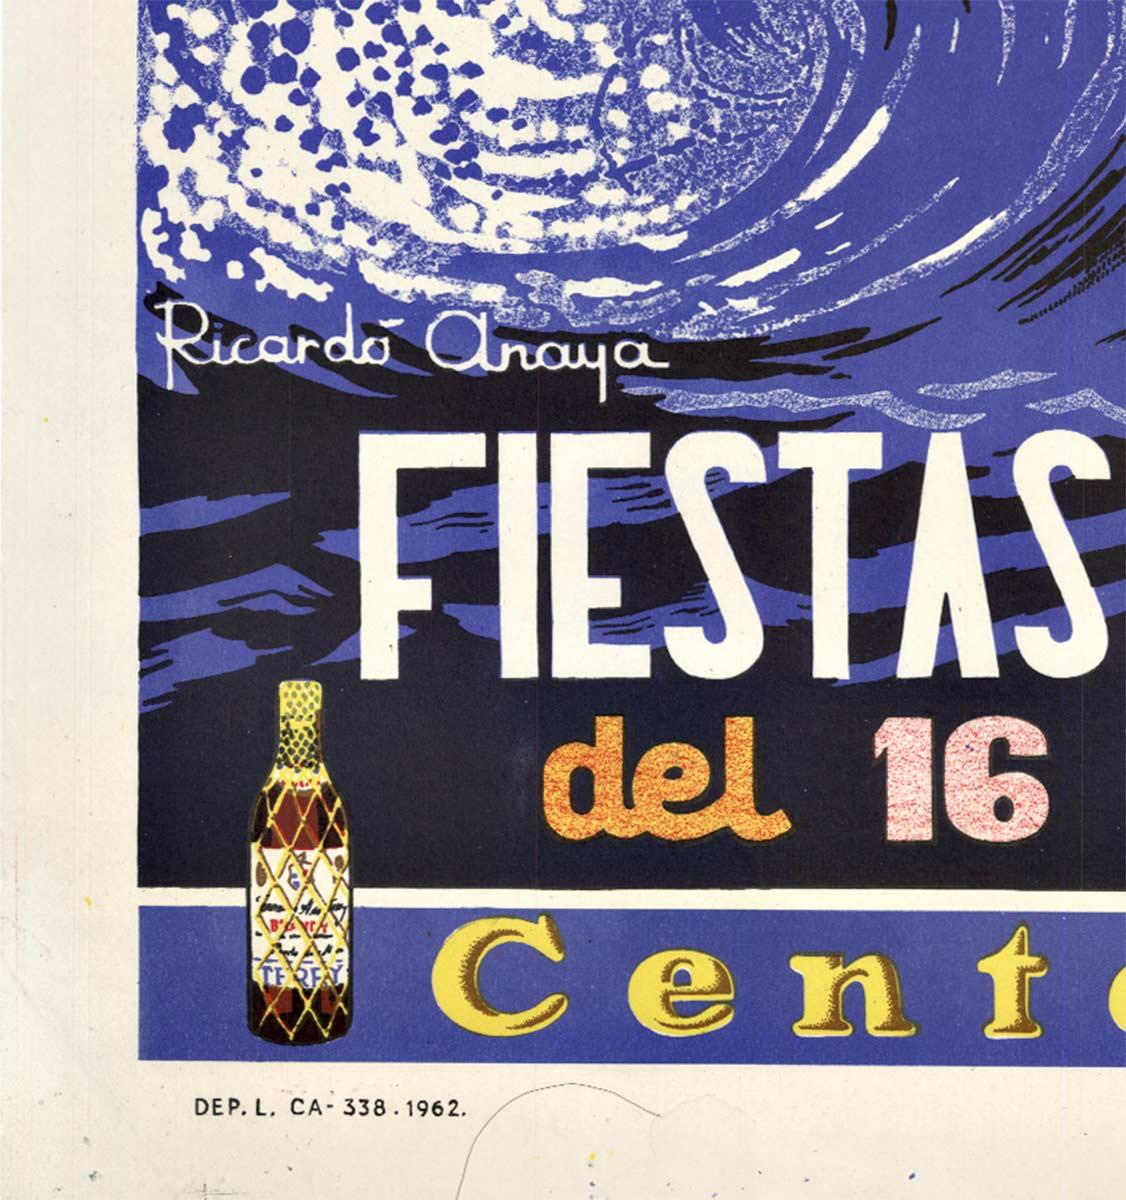 Original Cadiz Fiestas Tipicas Gaditanas Vintage spanisches Festival-Reiseplakat (Amerikanische Moderne), Print, von Richardo Anaya (Gomez)